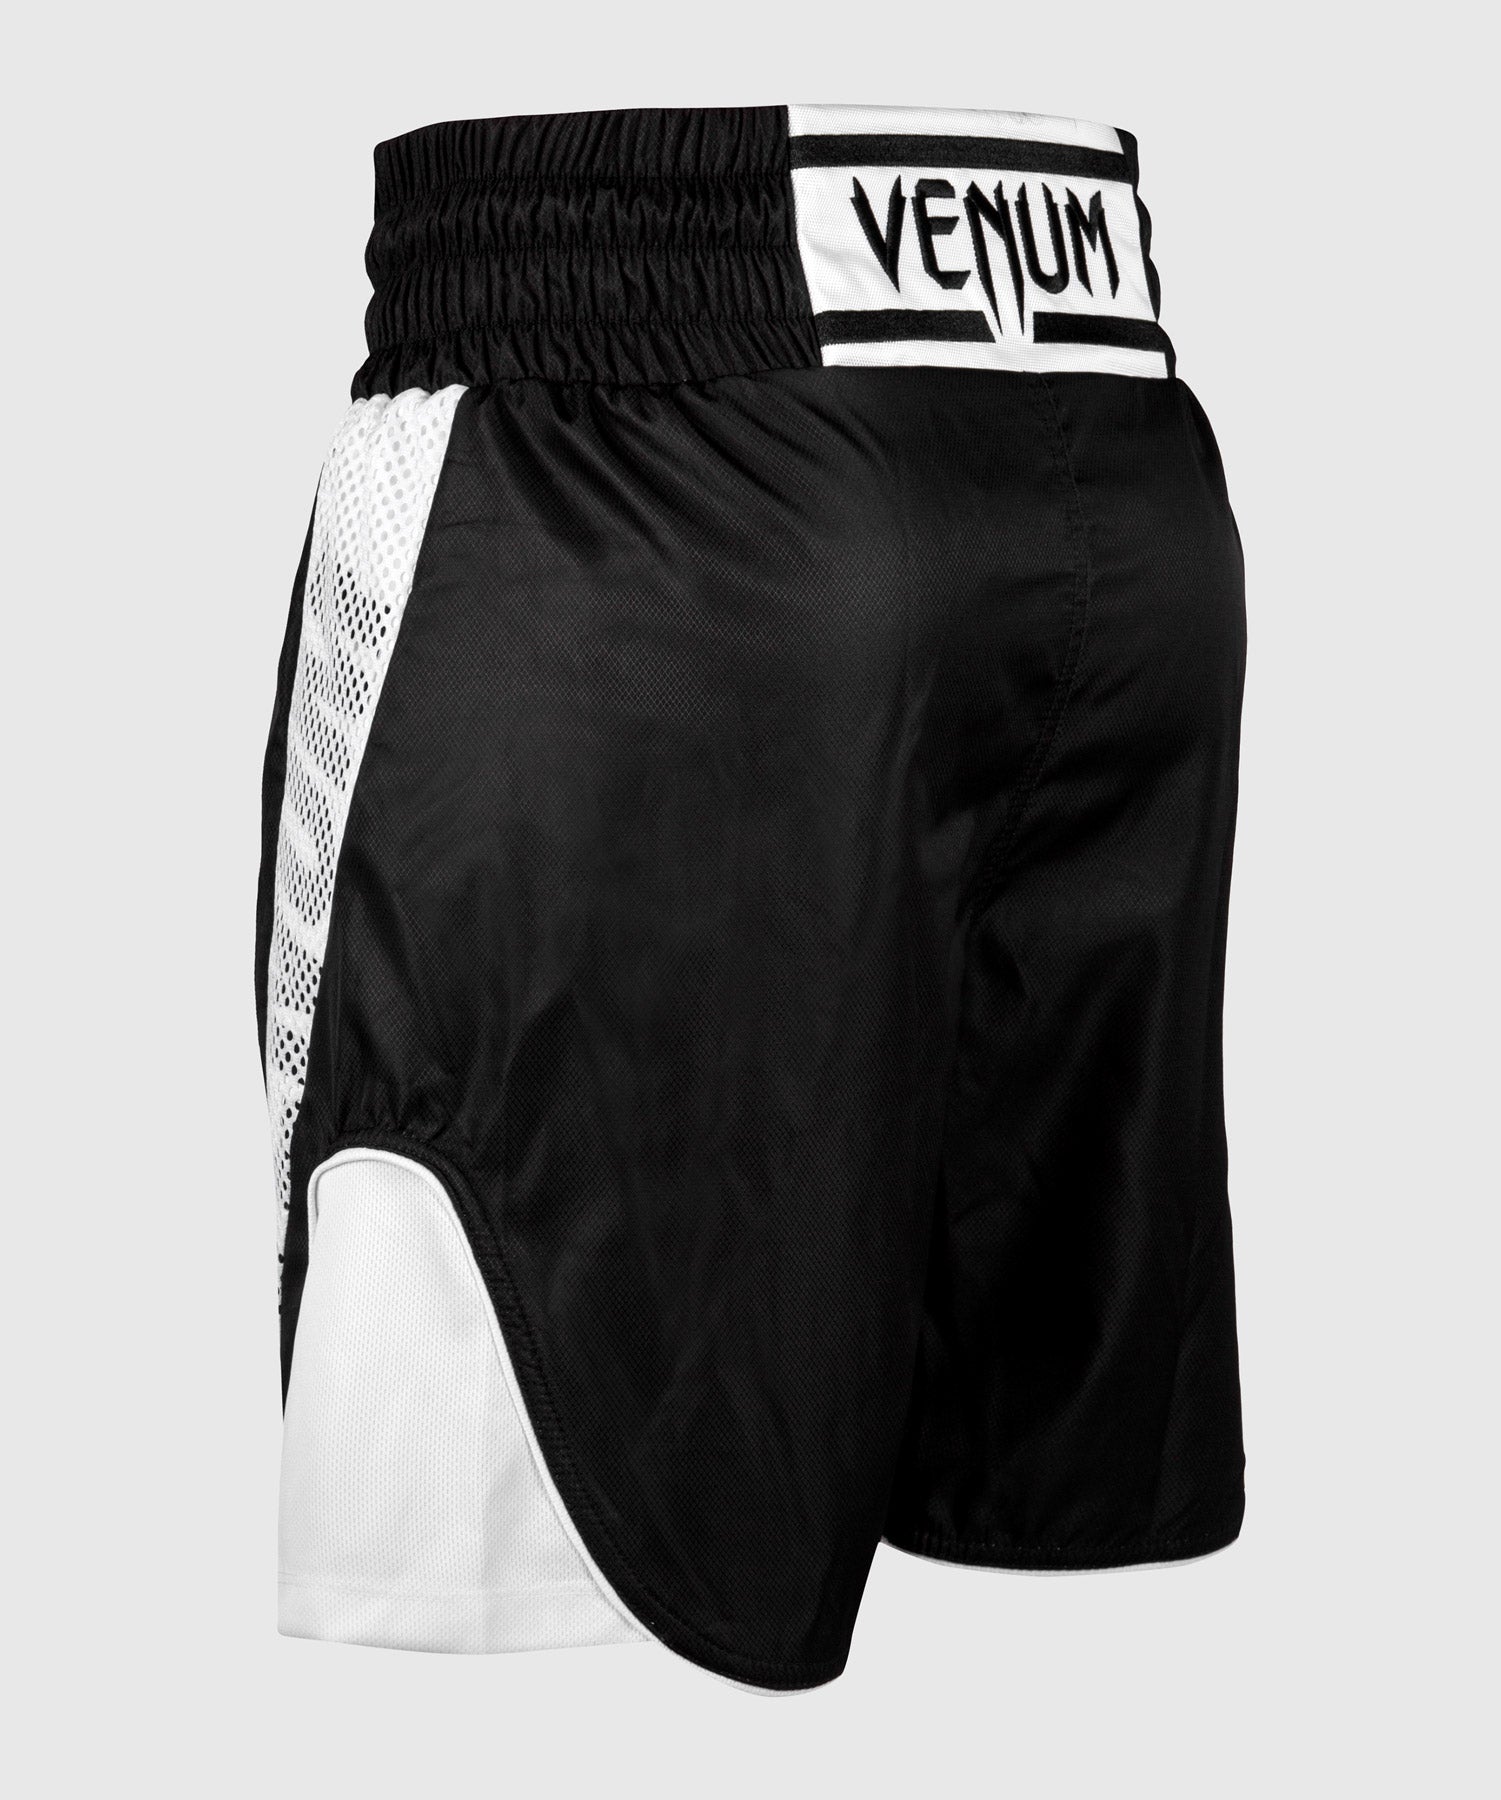 Las mejores ofertas en De hombre de Boxeo Pantalones cortos de boxeo y  artes marciales Venum